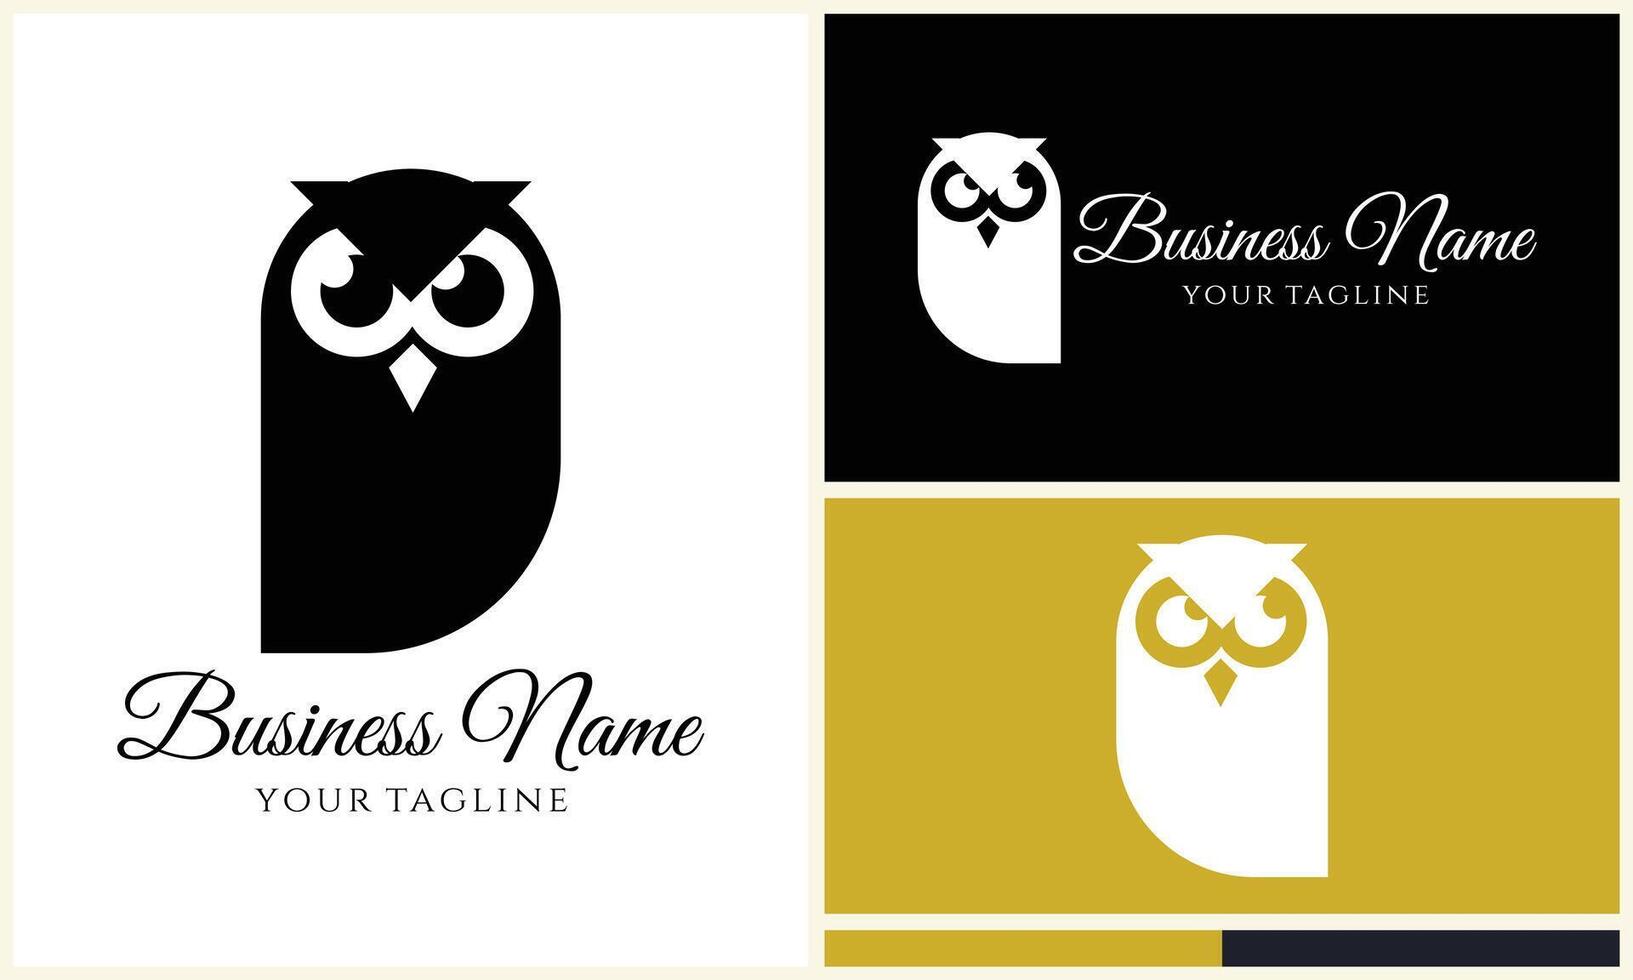 silhouette owl bird logo template vector